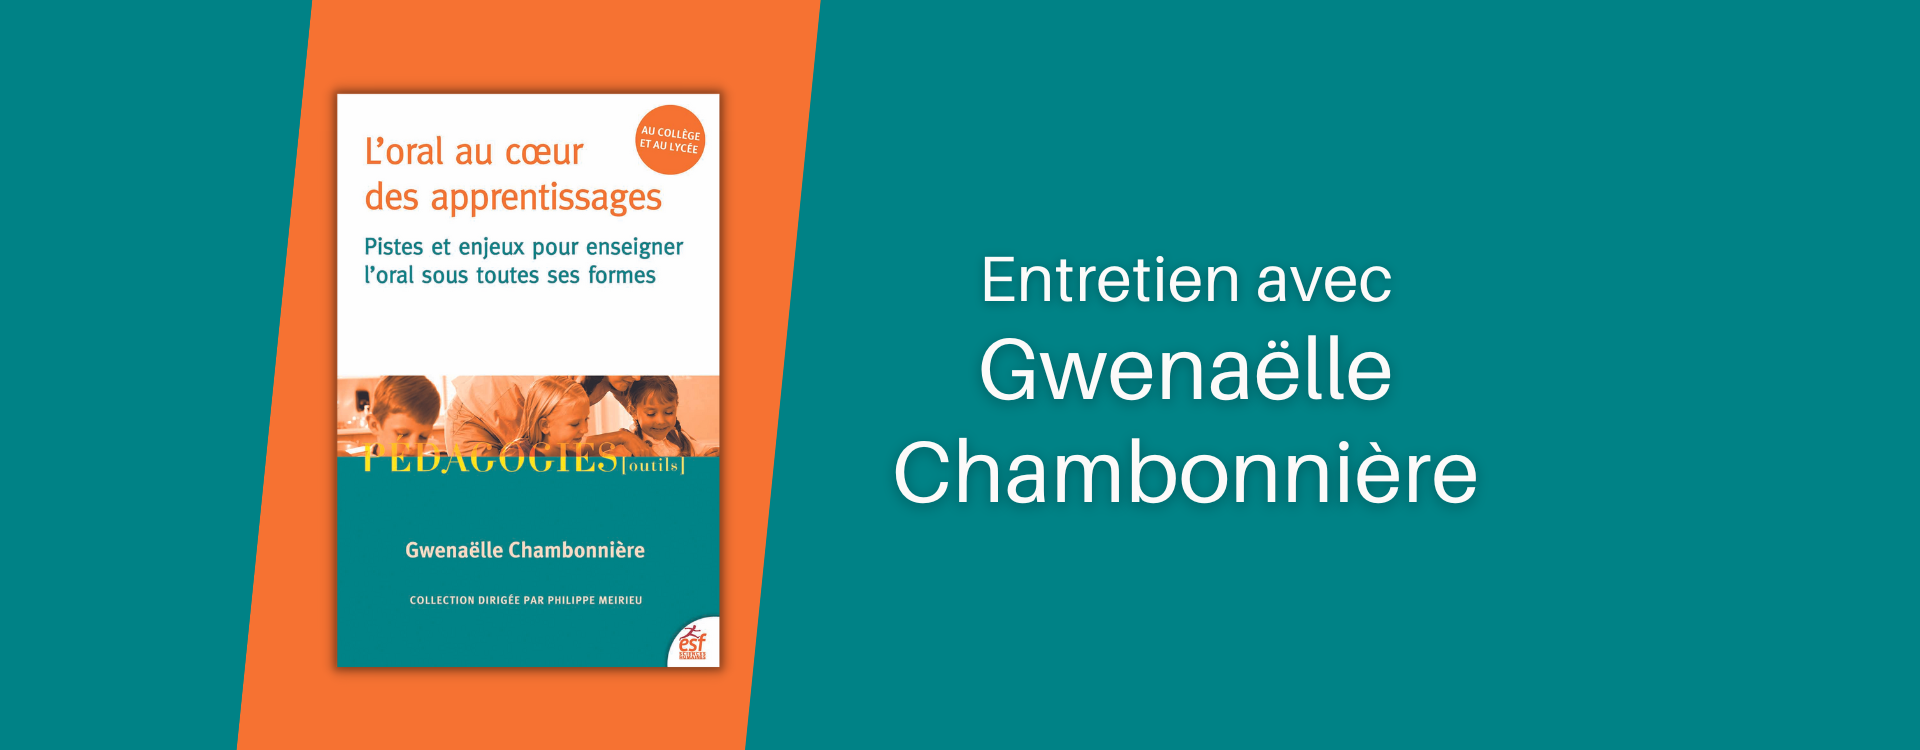 L'oral au cœur des apprentissages : entretien avec Gwenaëlle Chambonnière